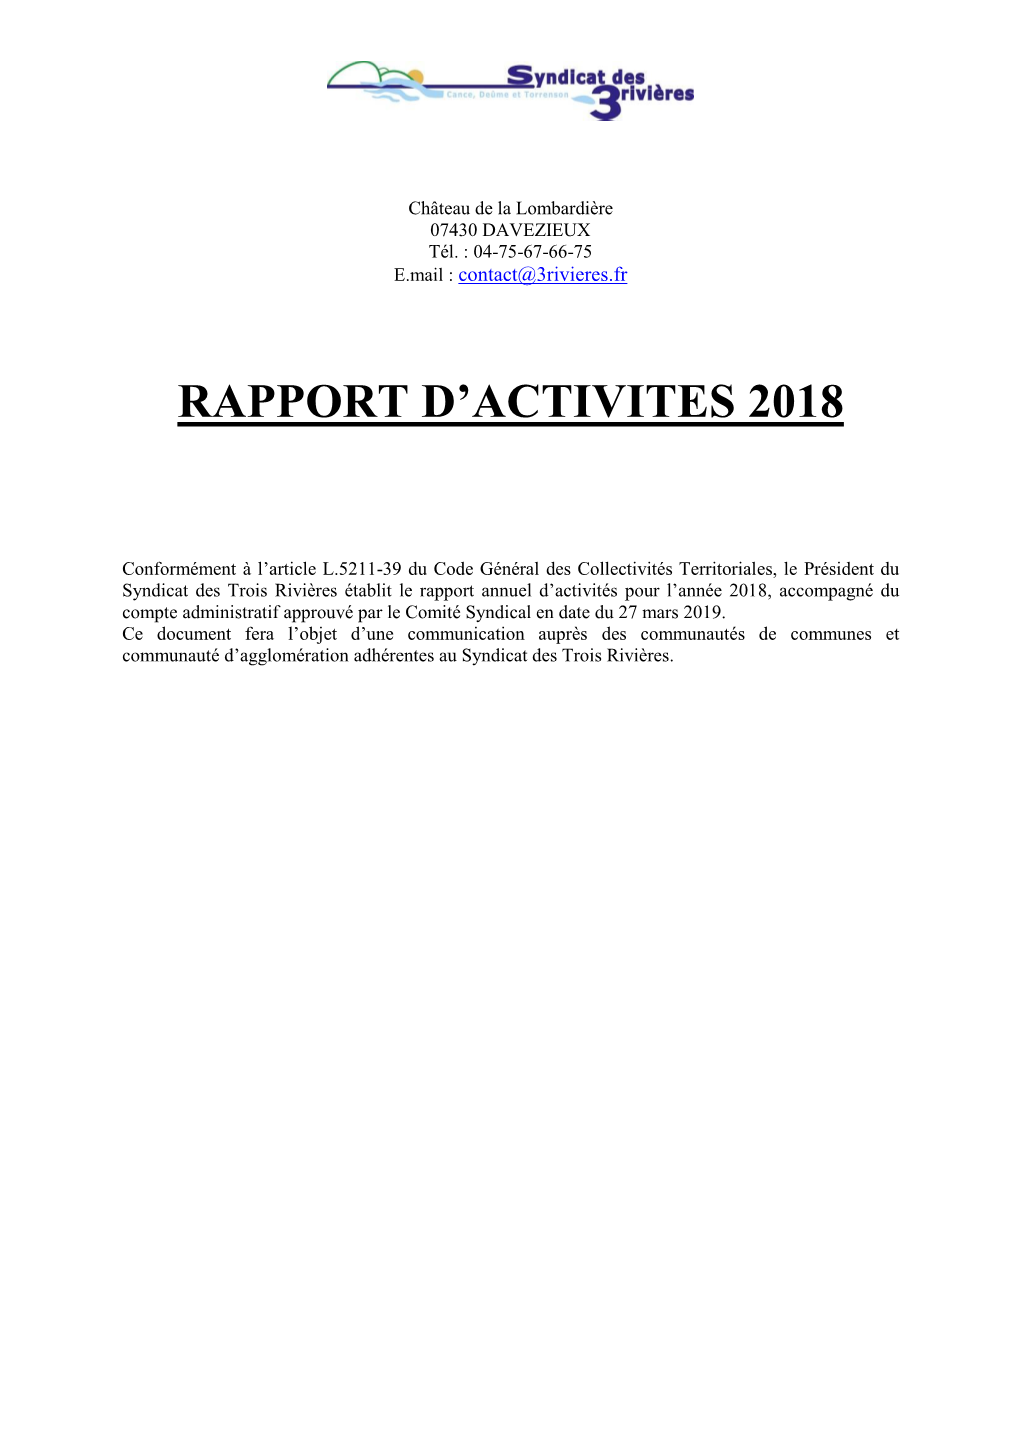 Rapport D'activité De 2018